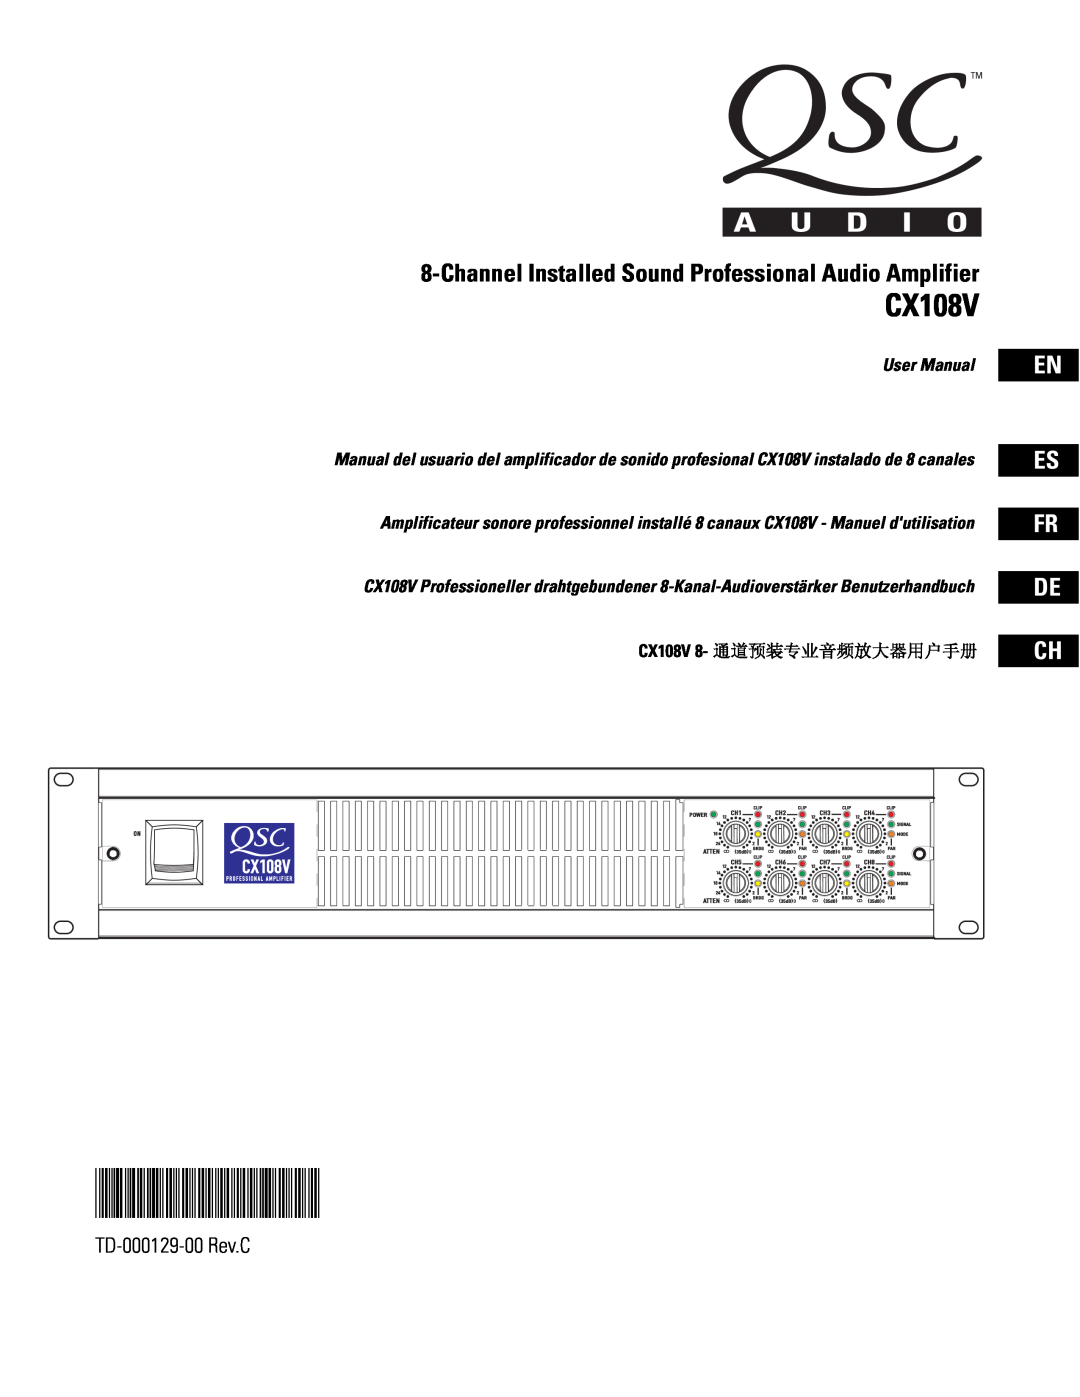 QSC Audio user manual En Es Fr De Ch, TD-000129-00Rev.C, CX108V 8- 通道预装专业音频放大器用户手册 